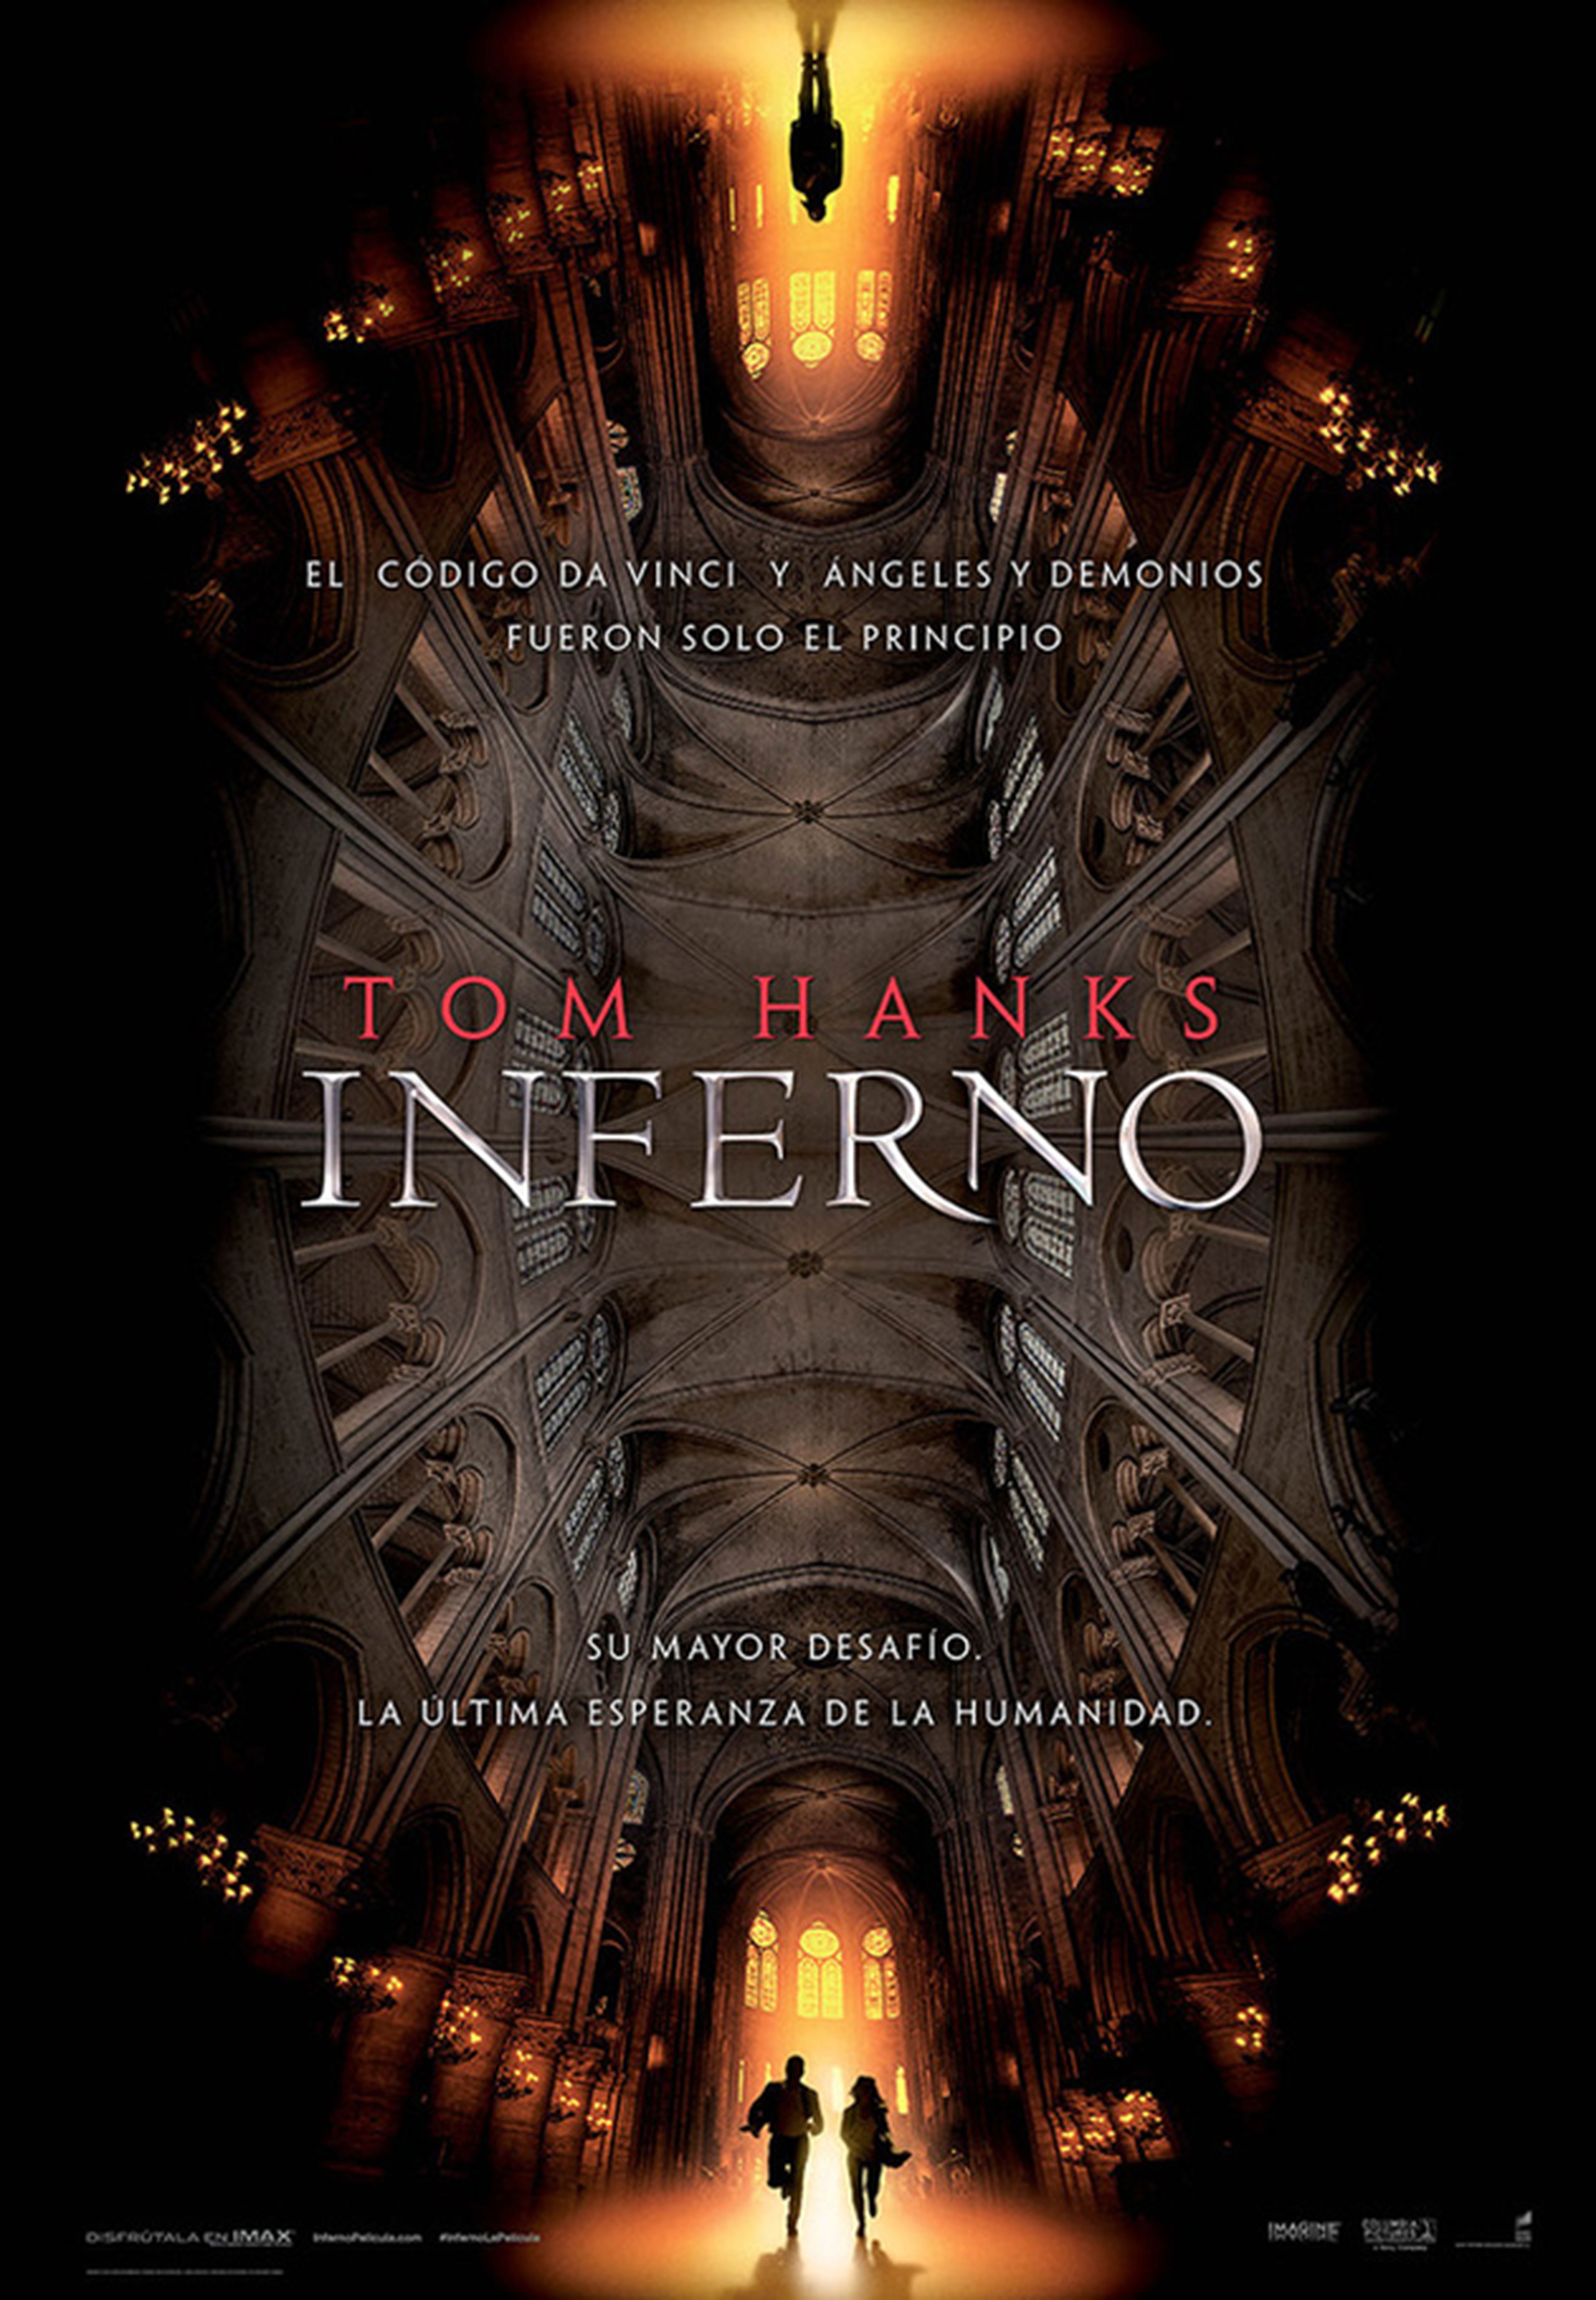 Inferno - Trailer en español, con Tom Hanks